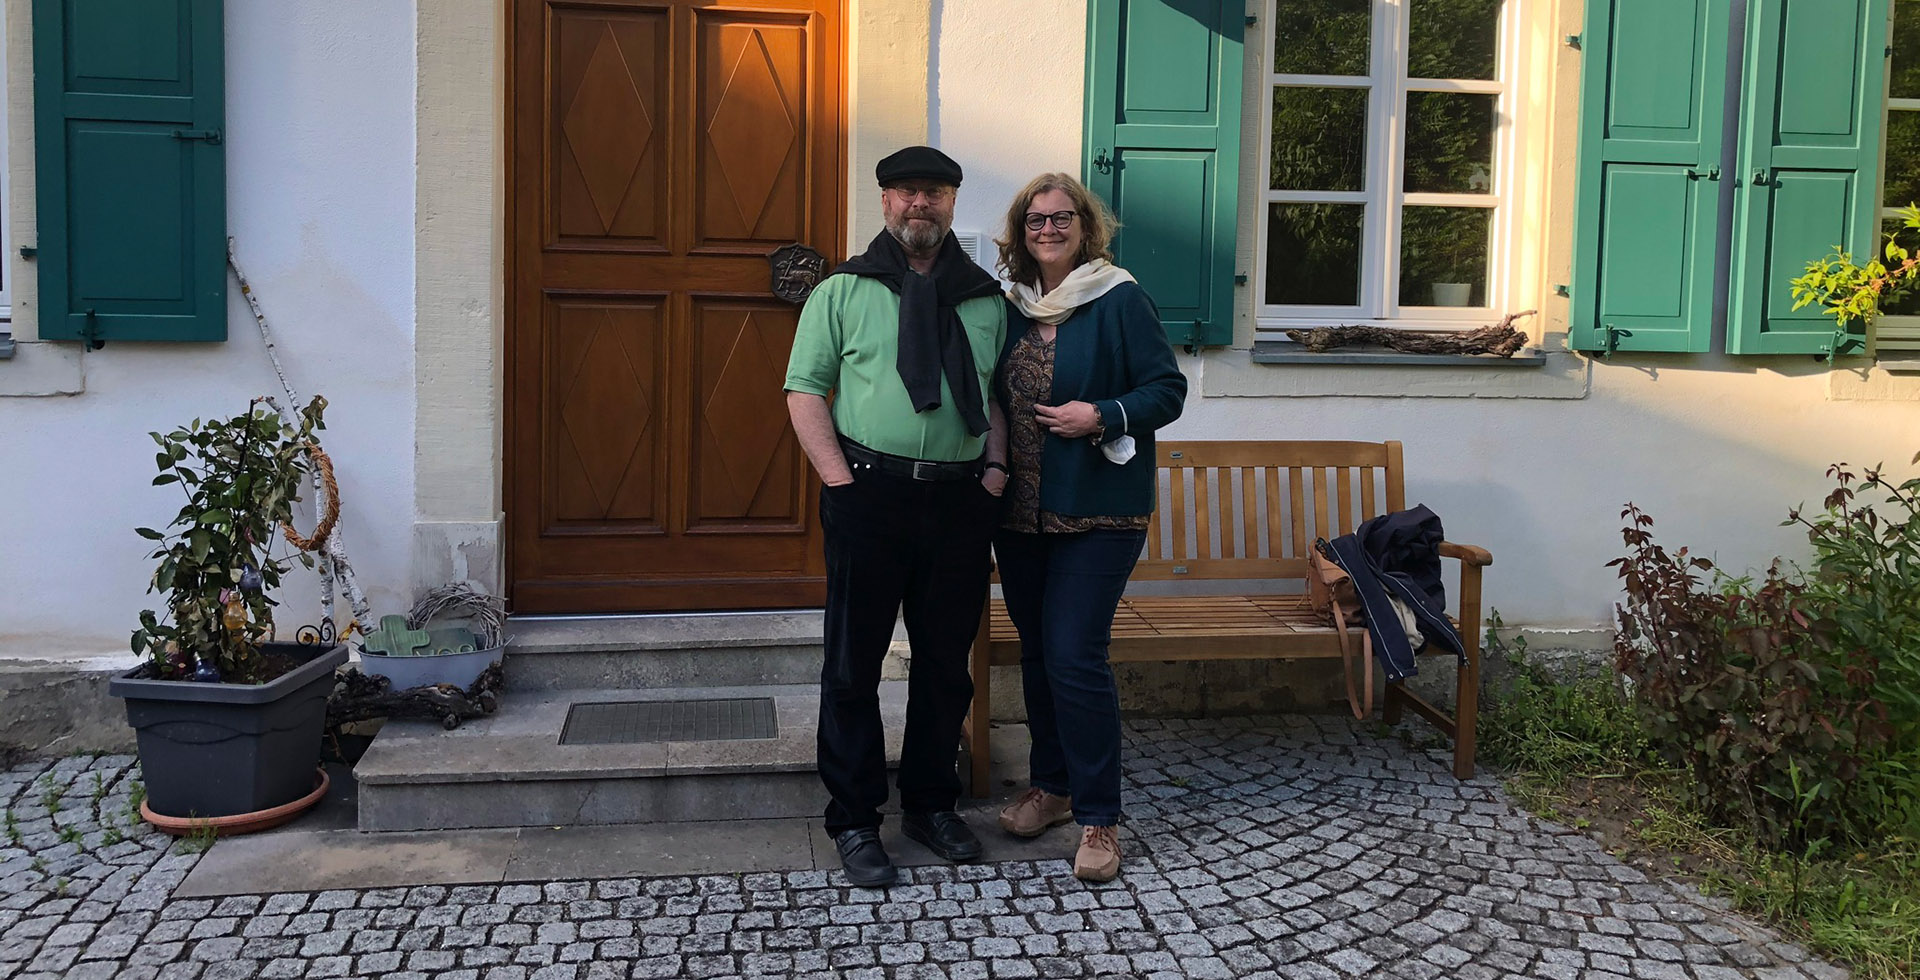   Pfarrer Martin Voß aus Prichsenstadt gemeinsam mit seiner Frau Tanja